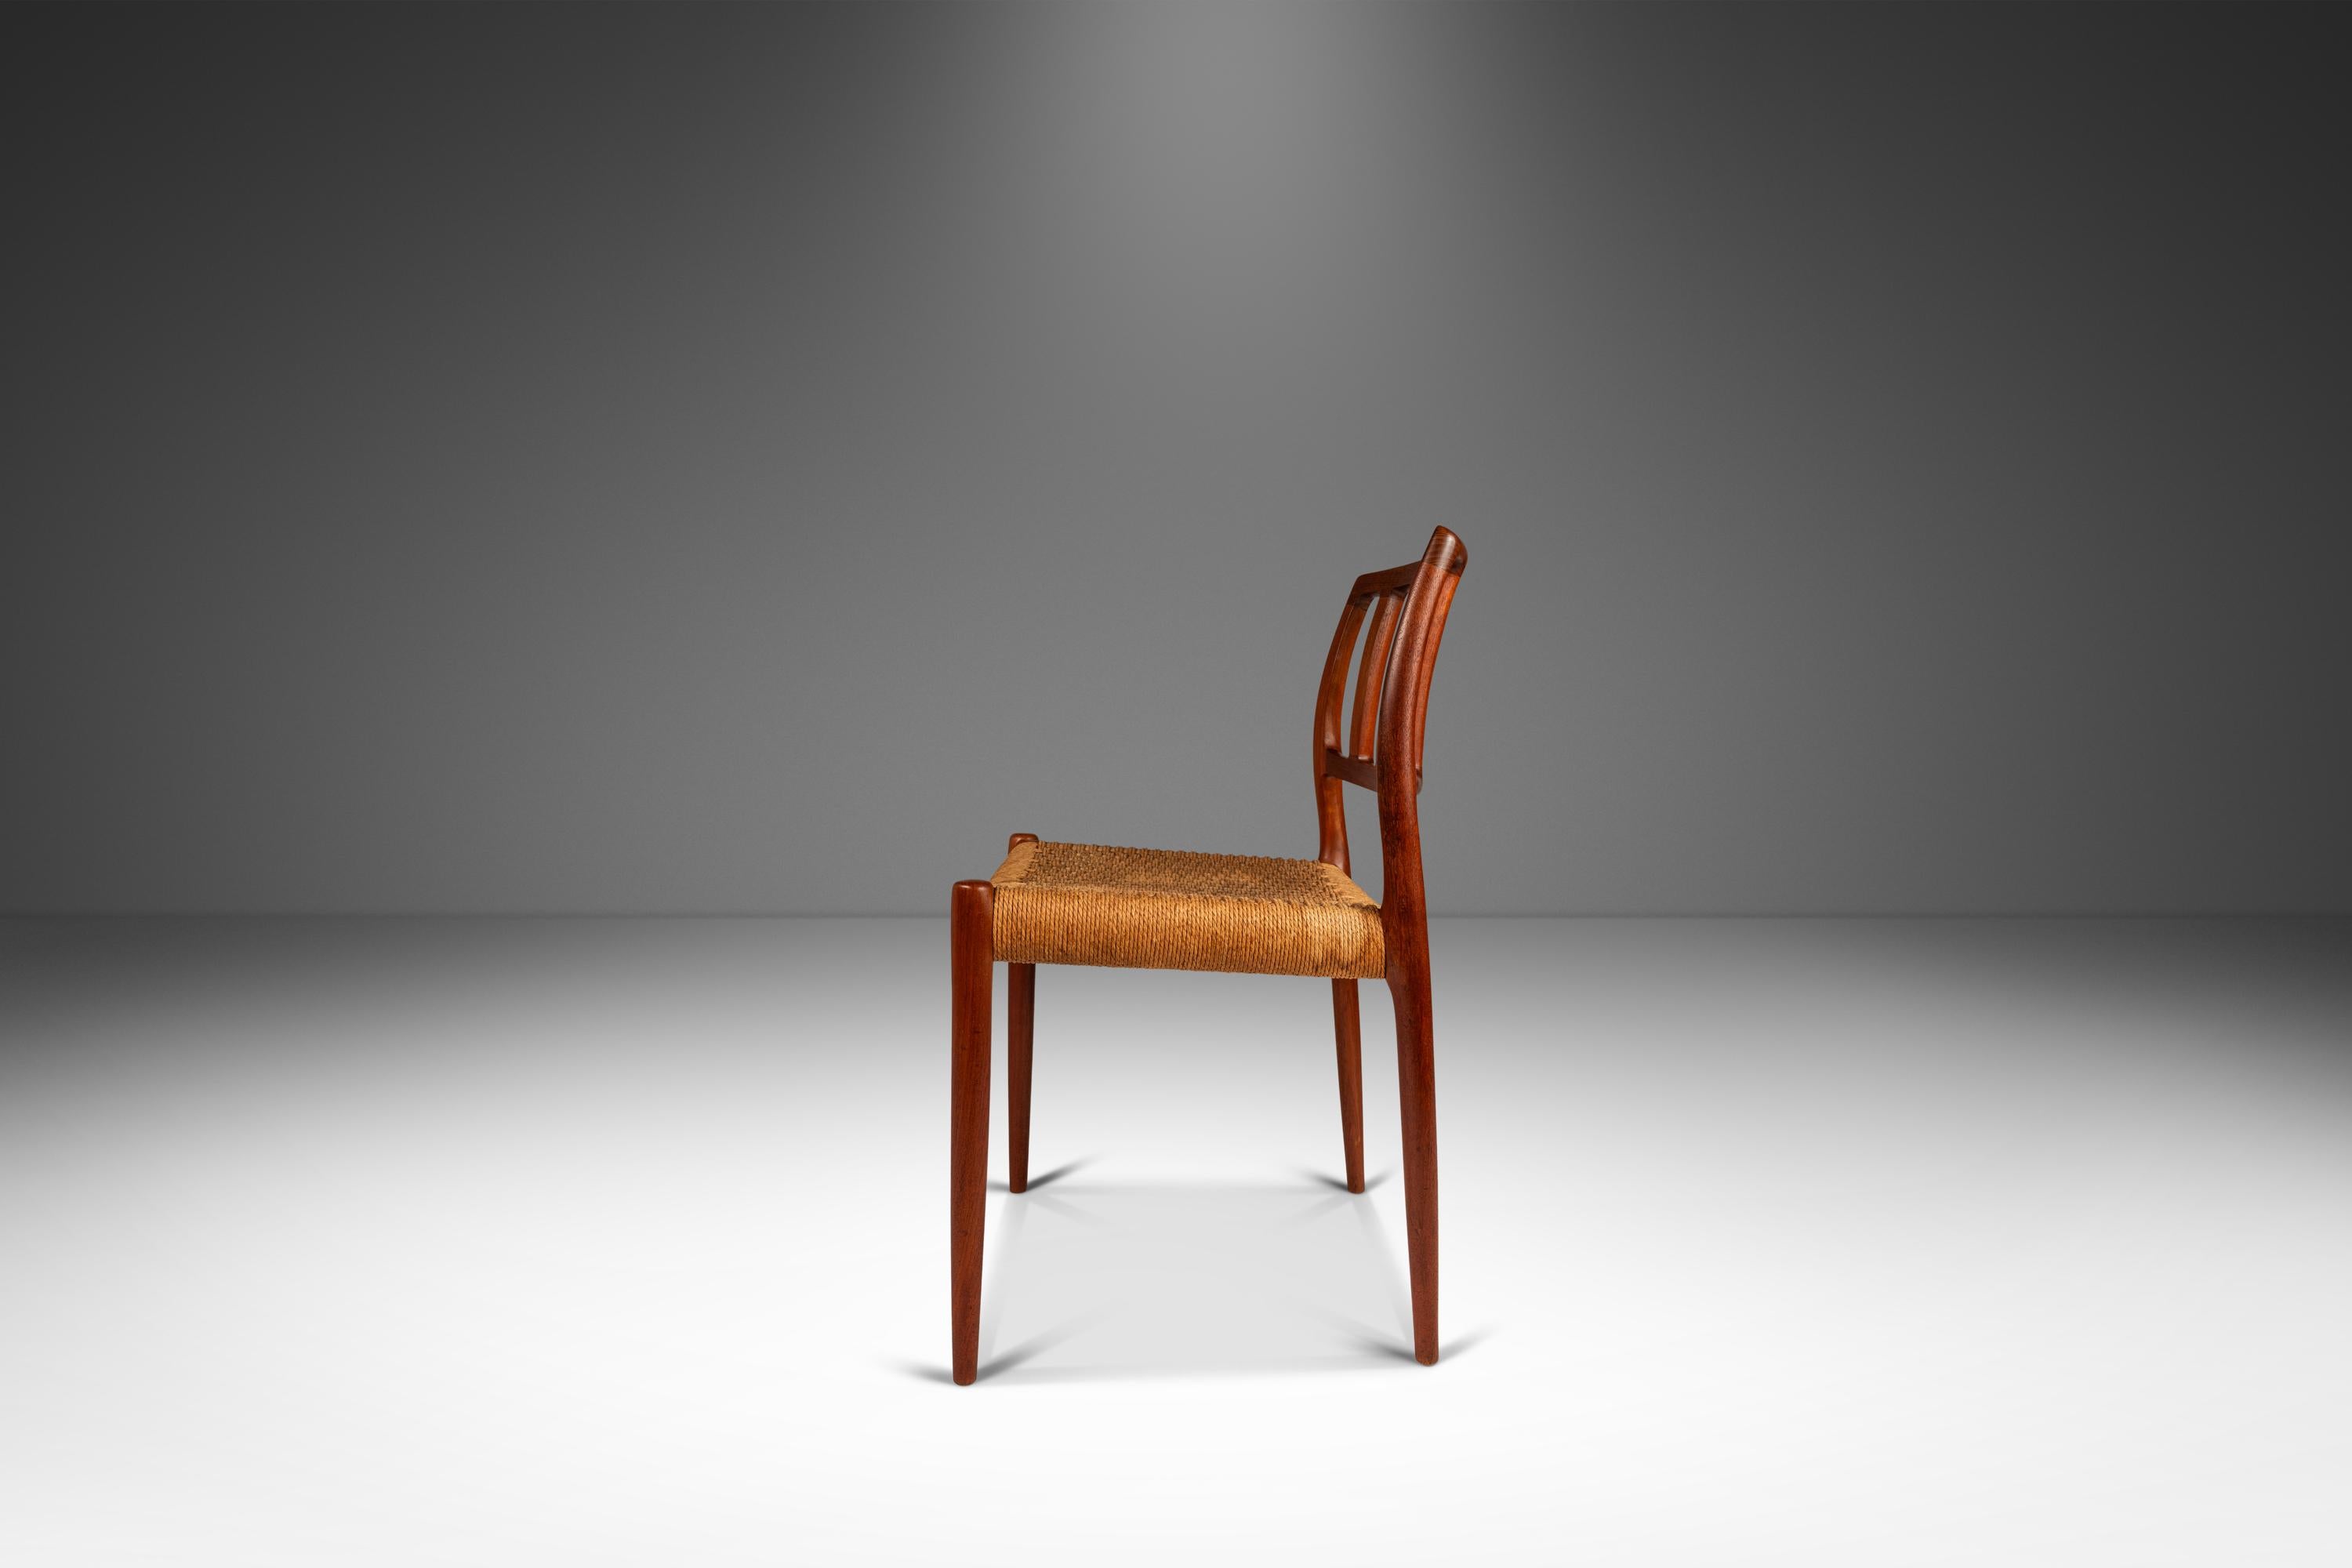 Voici une rare chaise d'appoint Niels Otto Moller modèle 83 pour I.L.A. Mollers Mobelfabrik, fabriqué dans les années 1960 au Danemark. Cette superbe chaise est fabriquée en teck massif, mettant en valeur la beauté naturelle du grain du bois et sa